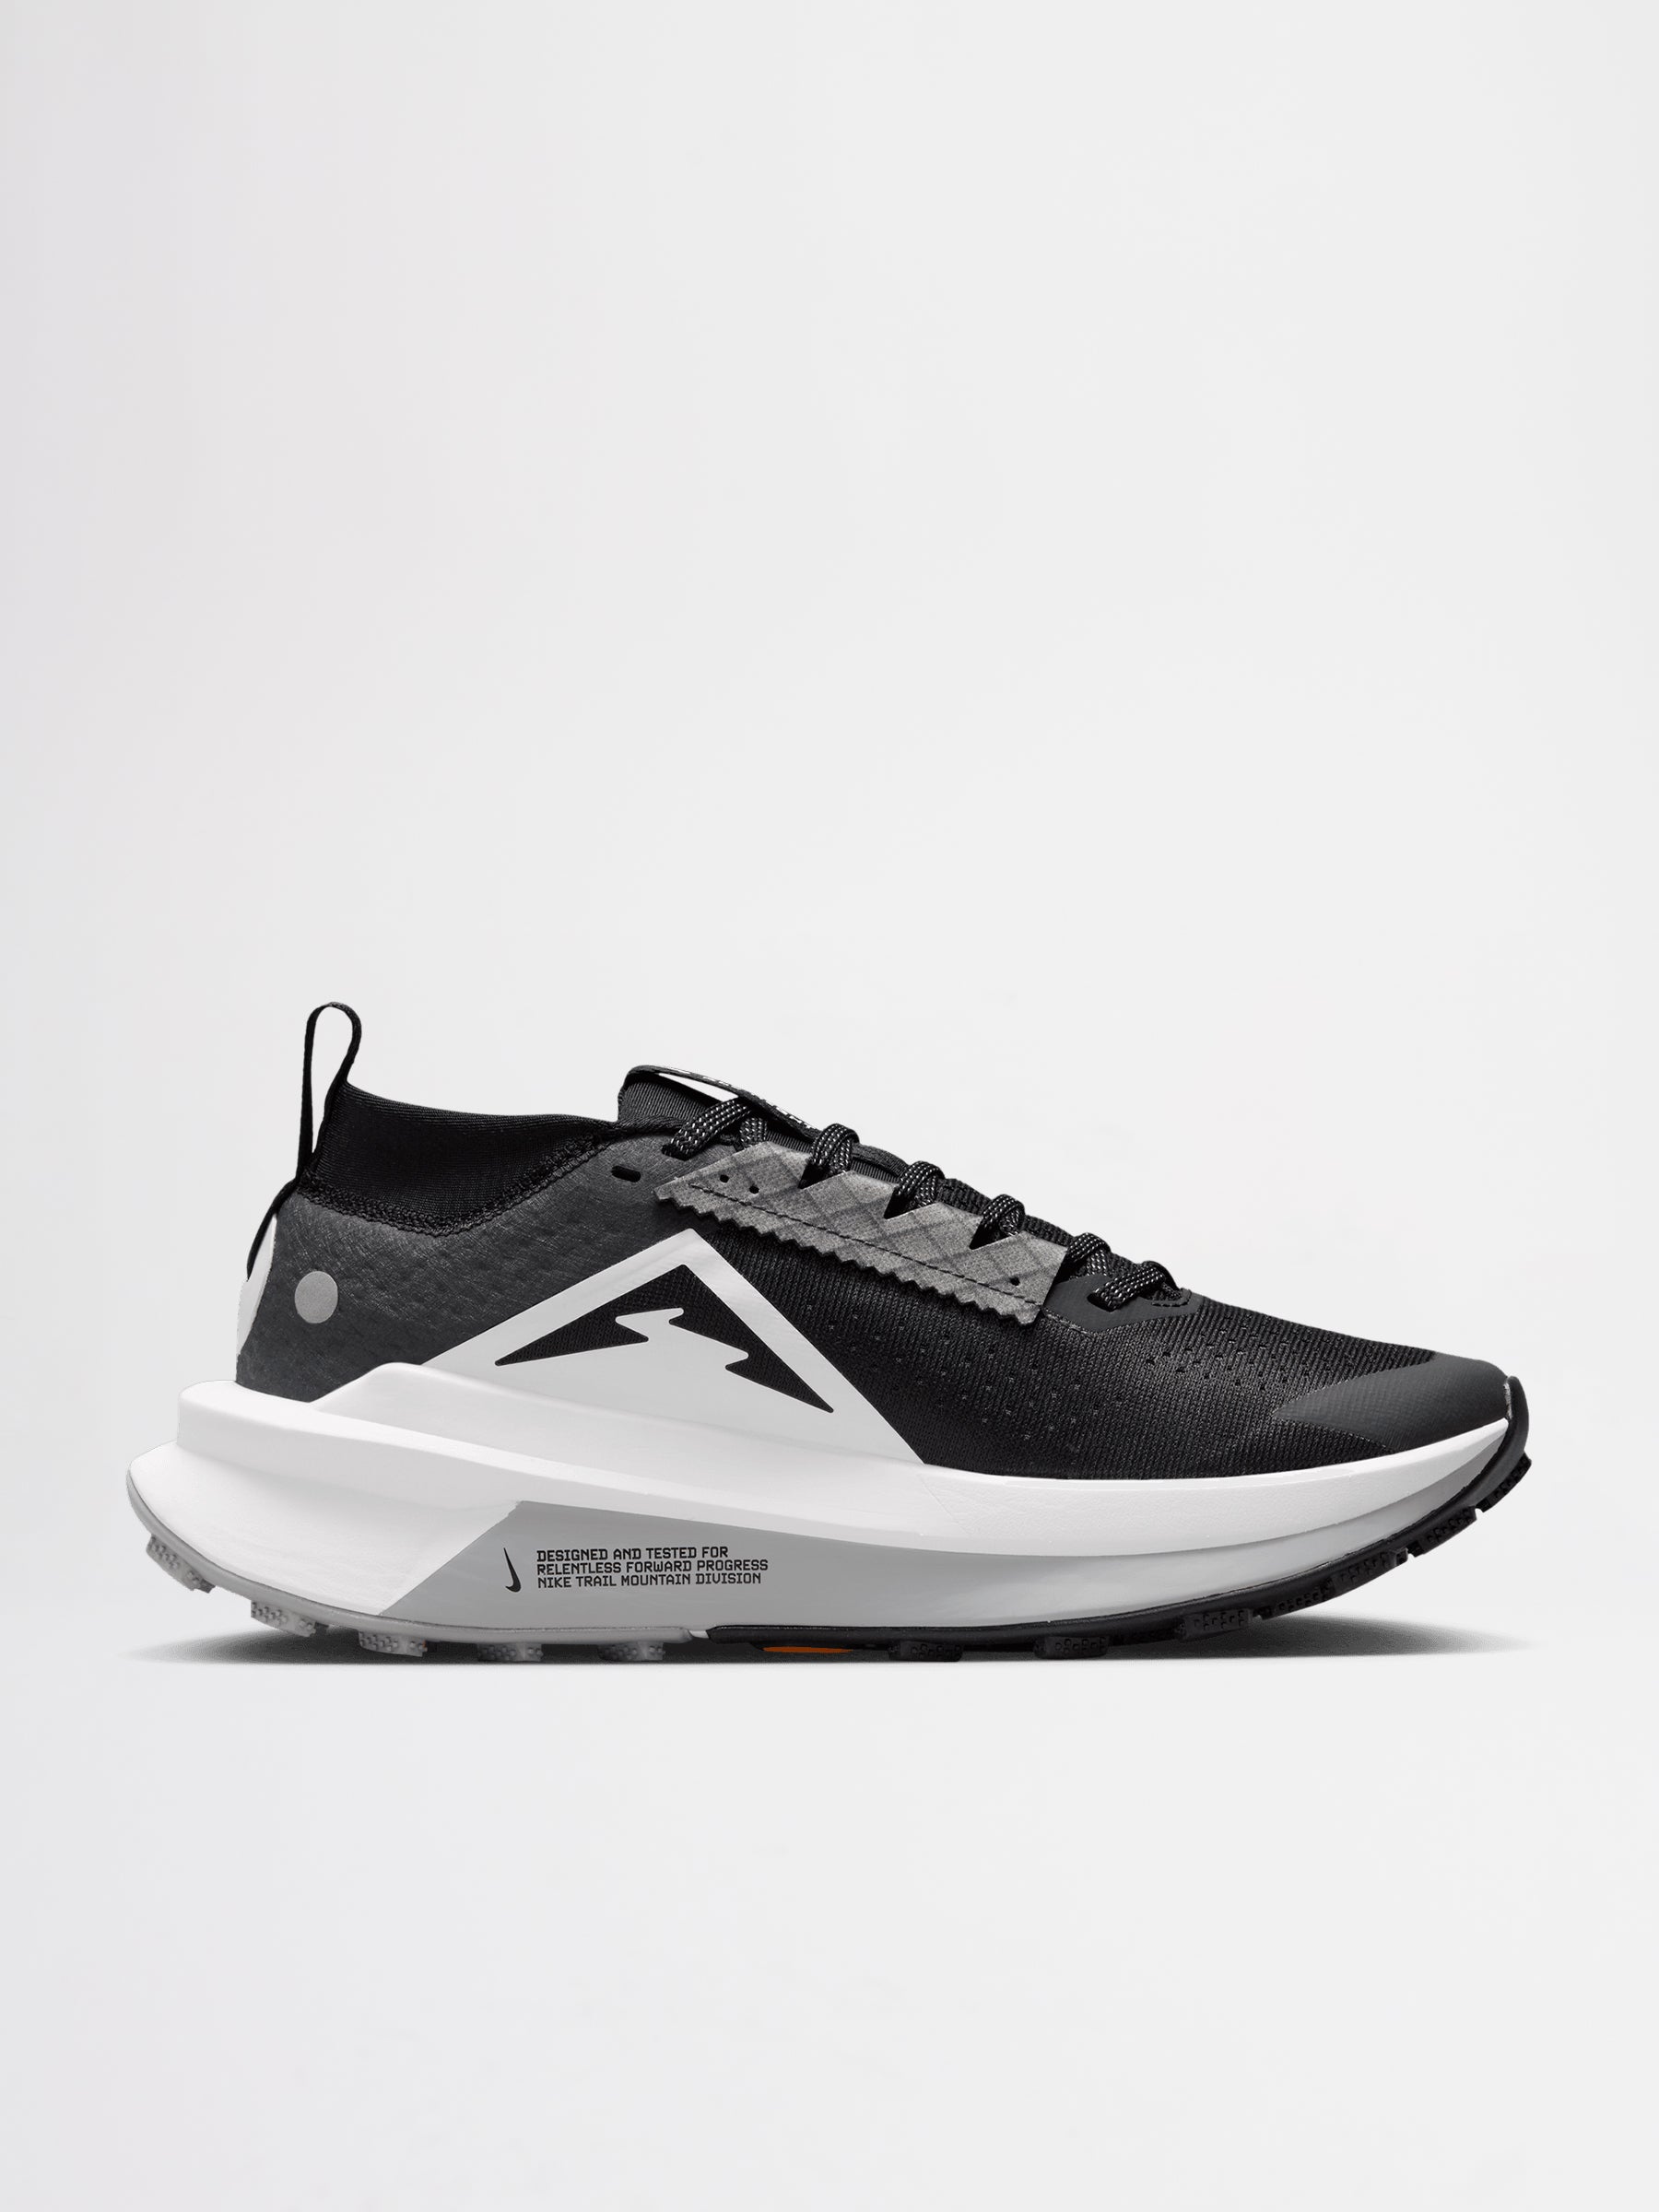 Nike W’s Zegama Trail 2 Black / White